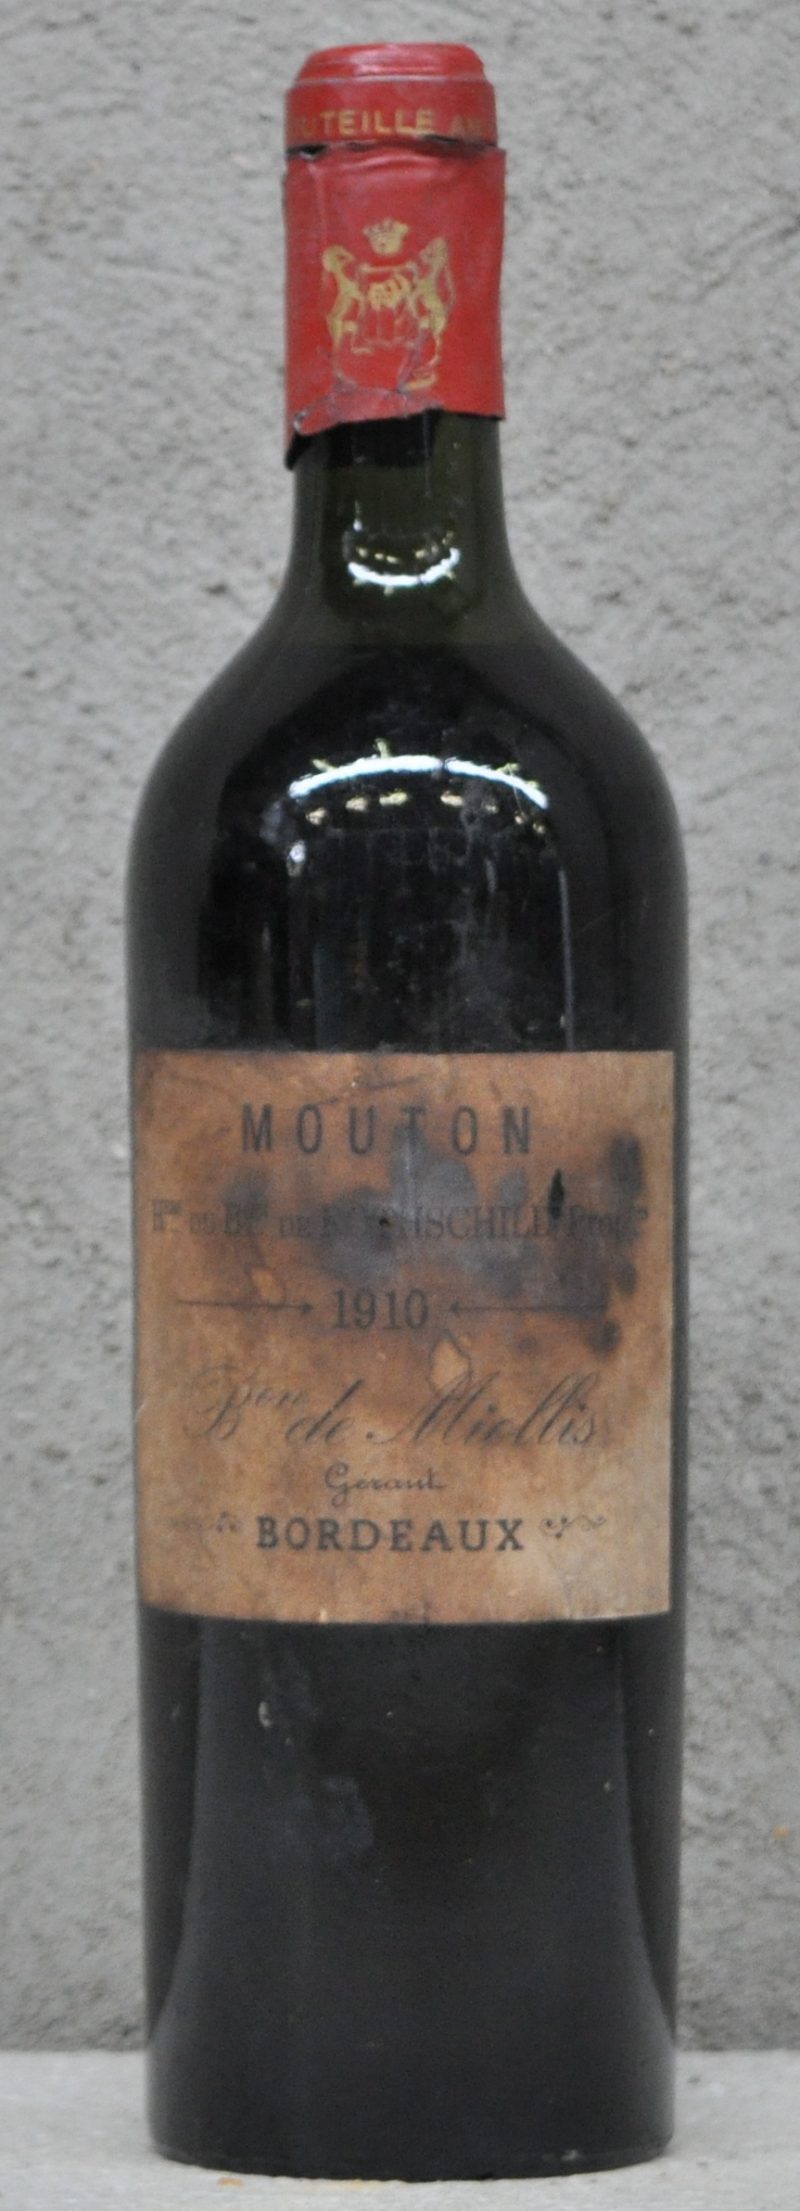 Mouton   Hers du Bon de Rothschild Propres, Bordeaux   1910  aantal: 1 bt ts, afgesneden capsule